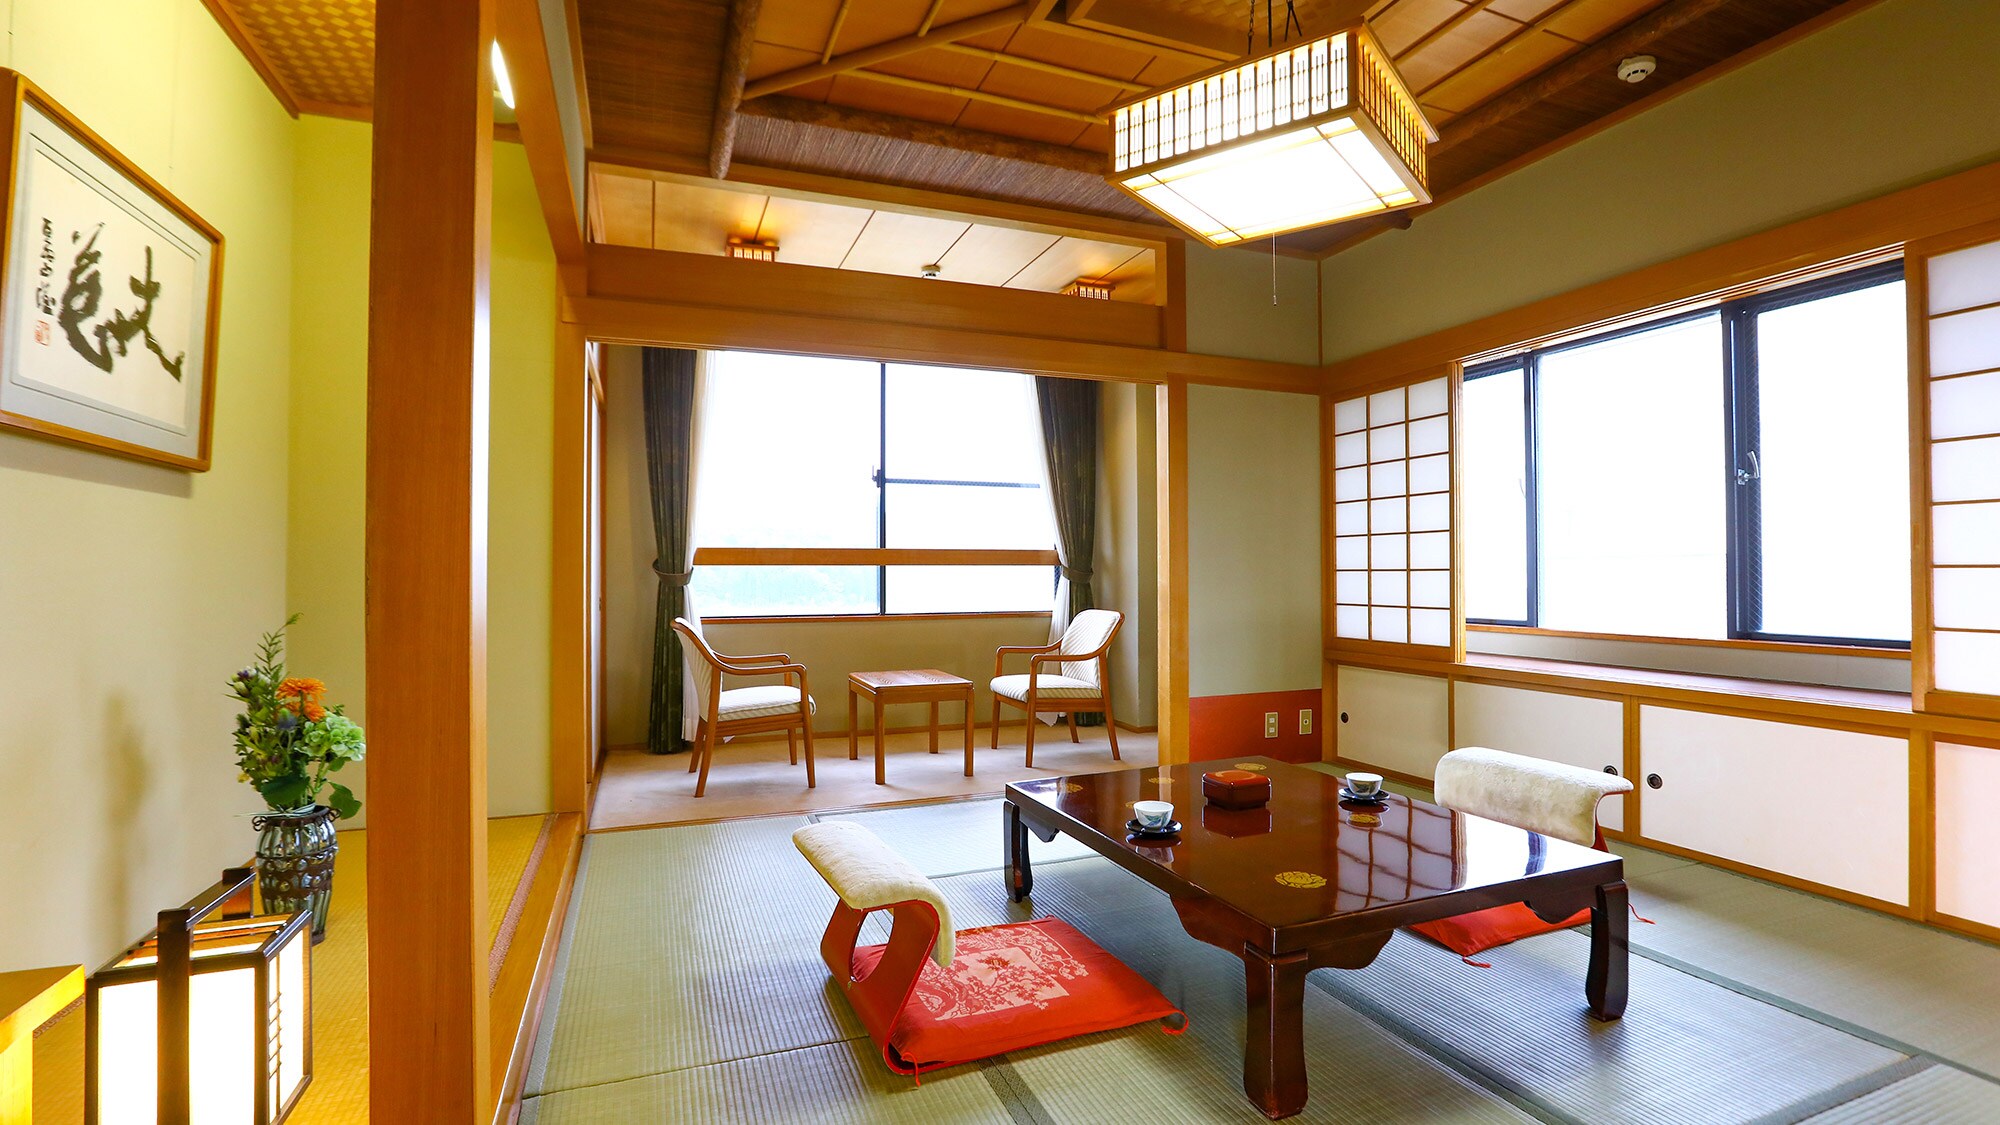 【禁煙】日式和西式房間8張榻榻米+雙床&helip;7F特別房間。客廳有日式臥室和西式臥室。